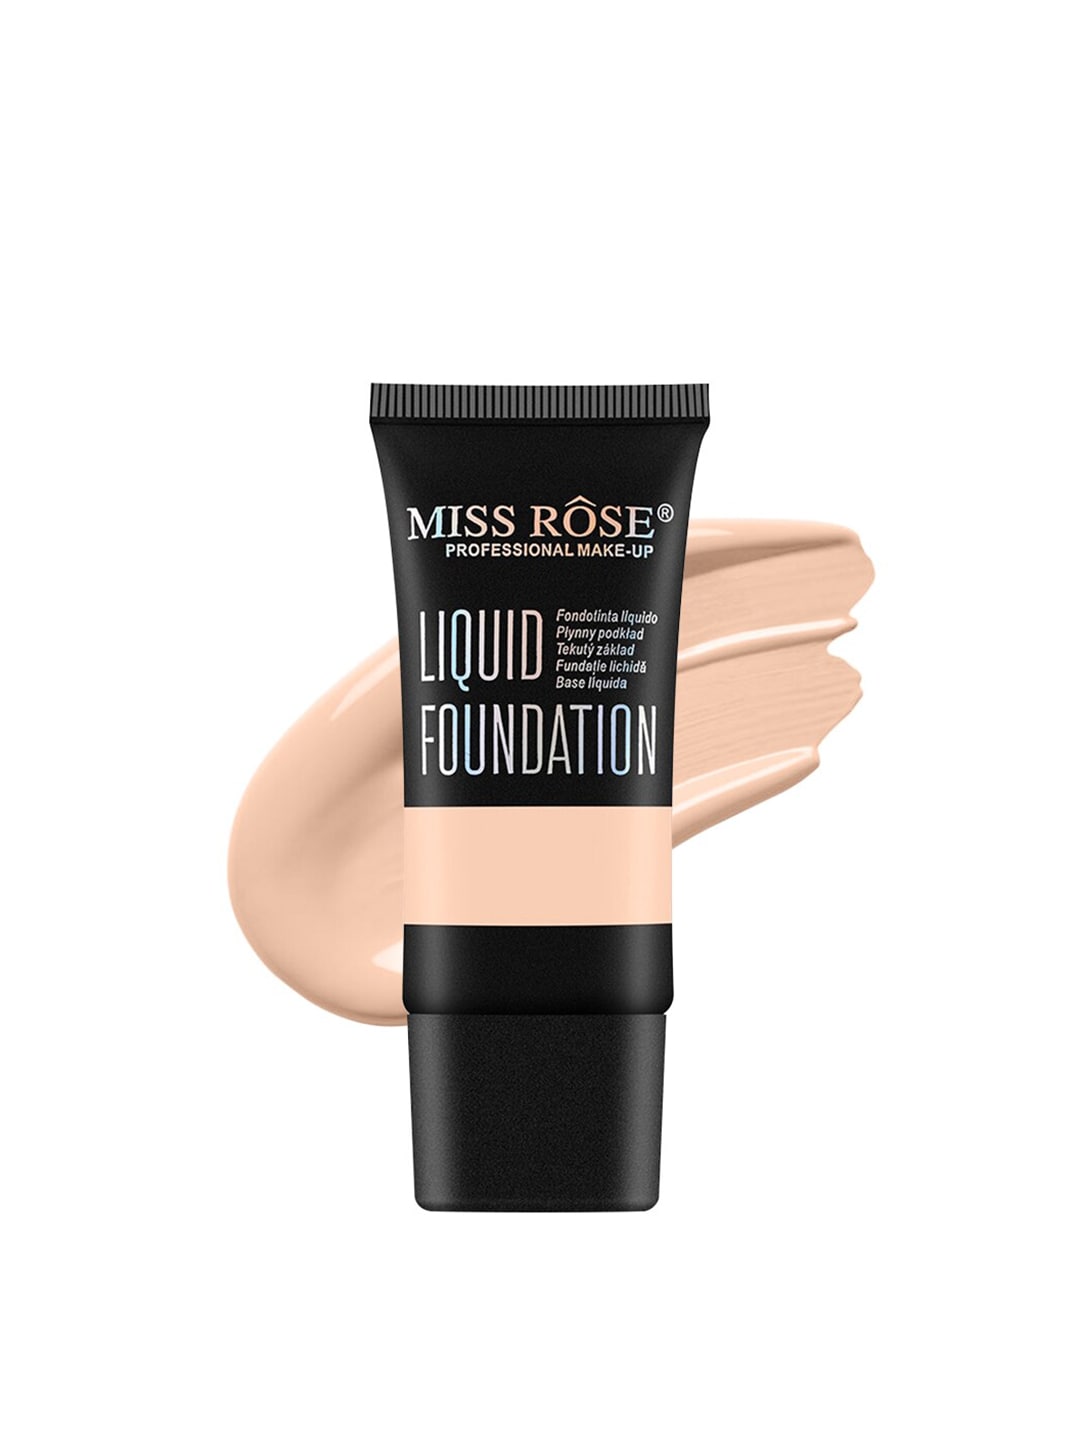 MISS ROSE Matte Finish Liquid Foundation - Beige 04 Price in India